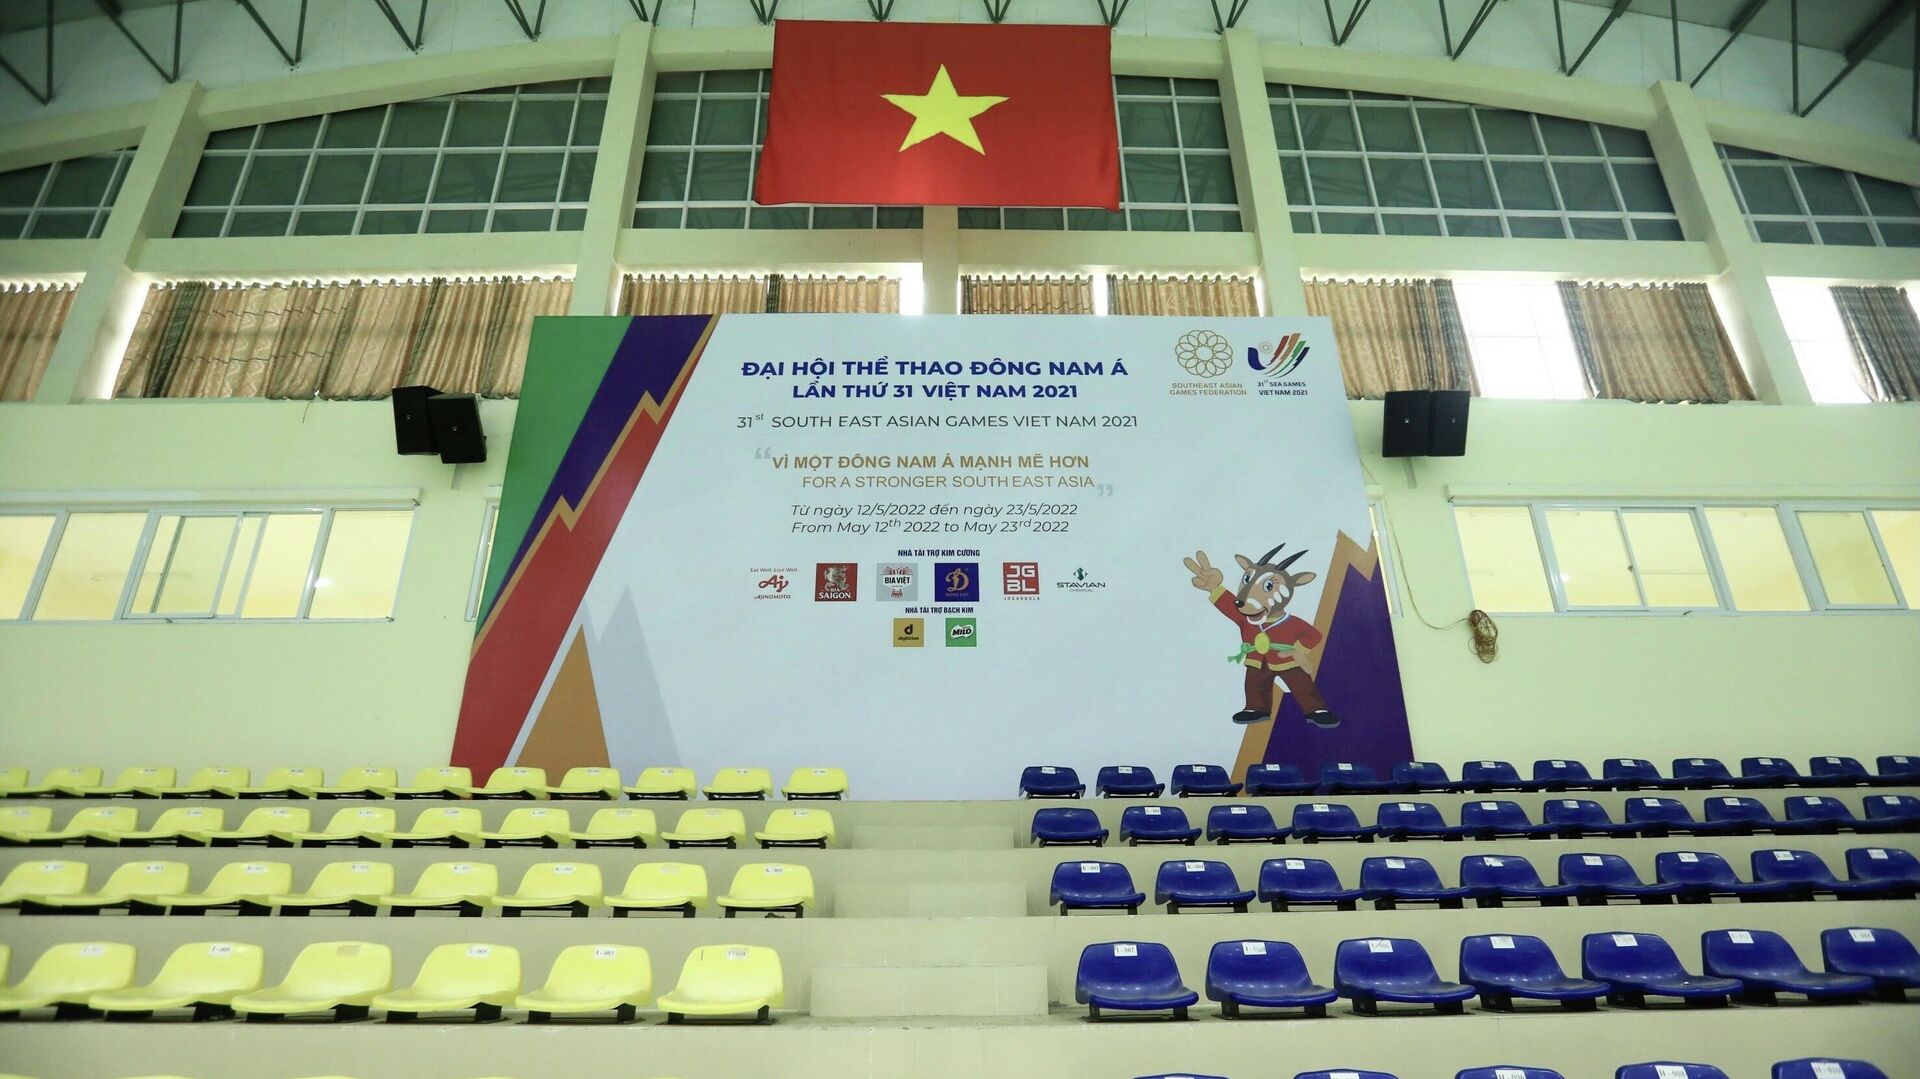 Nhà thi đấu Hoài Đức đã sẵn sàng đón 2.000 khán giả đến cổ vũ các nội dung thi đấu trong khuôn khổ SEA Games 31. - Sputnik Việt Nam, 1920, 21.03.2022